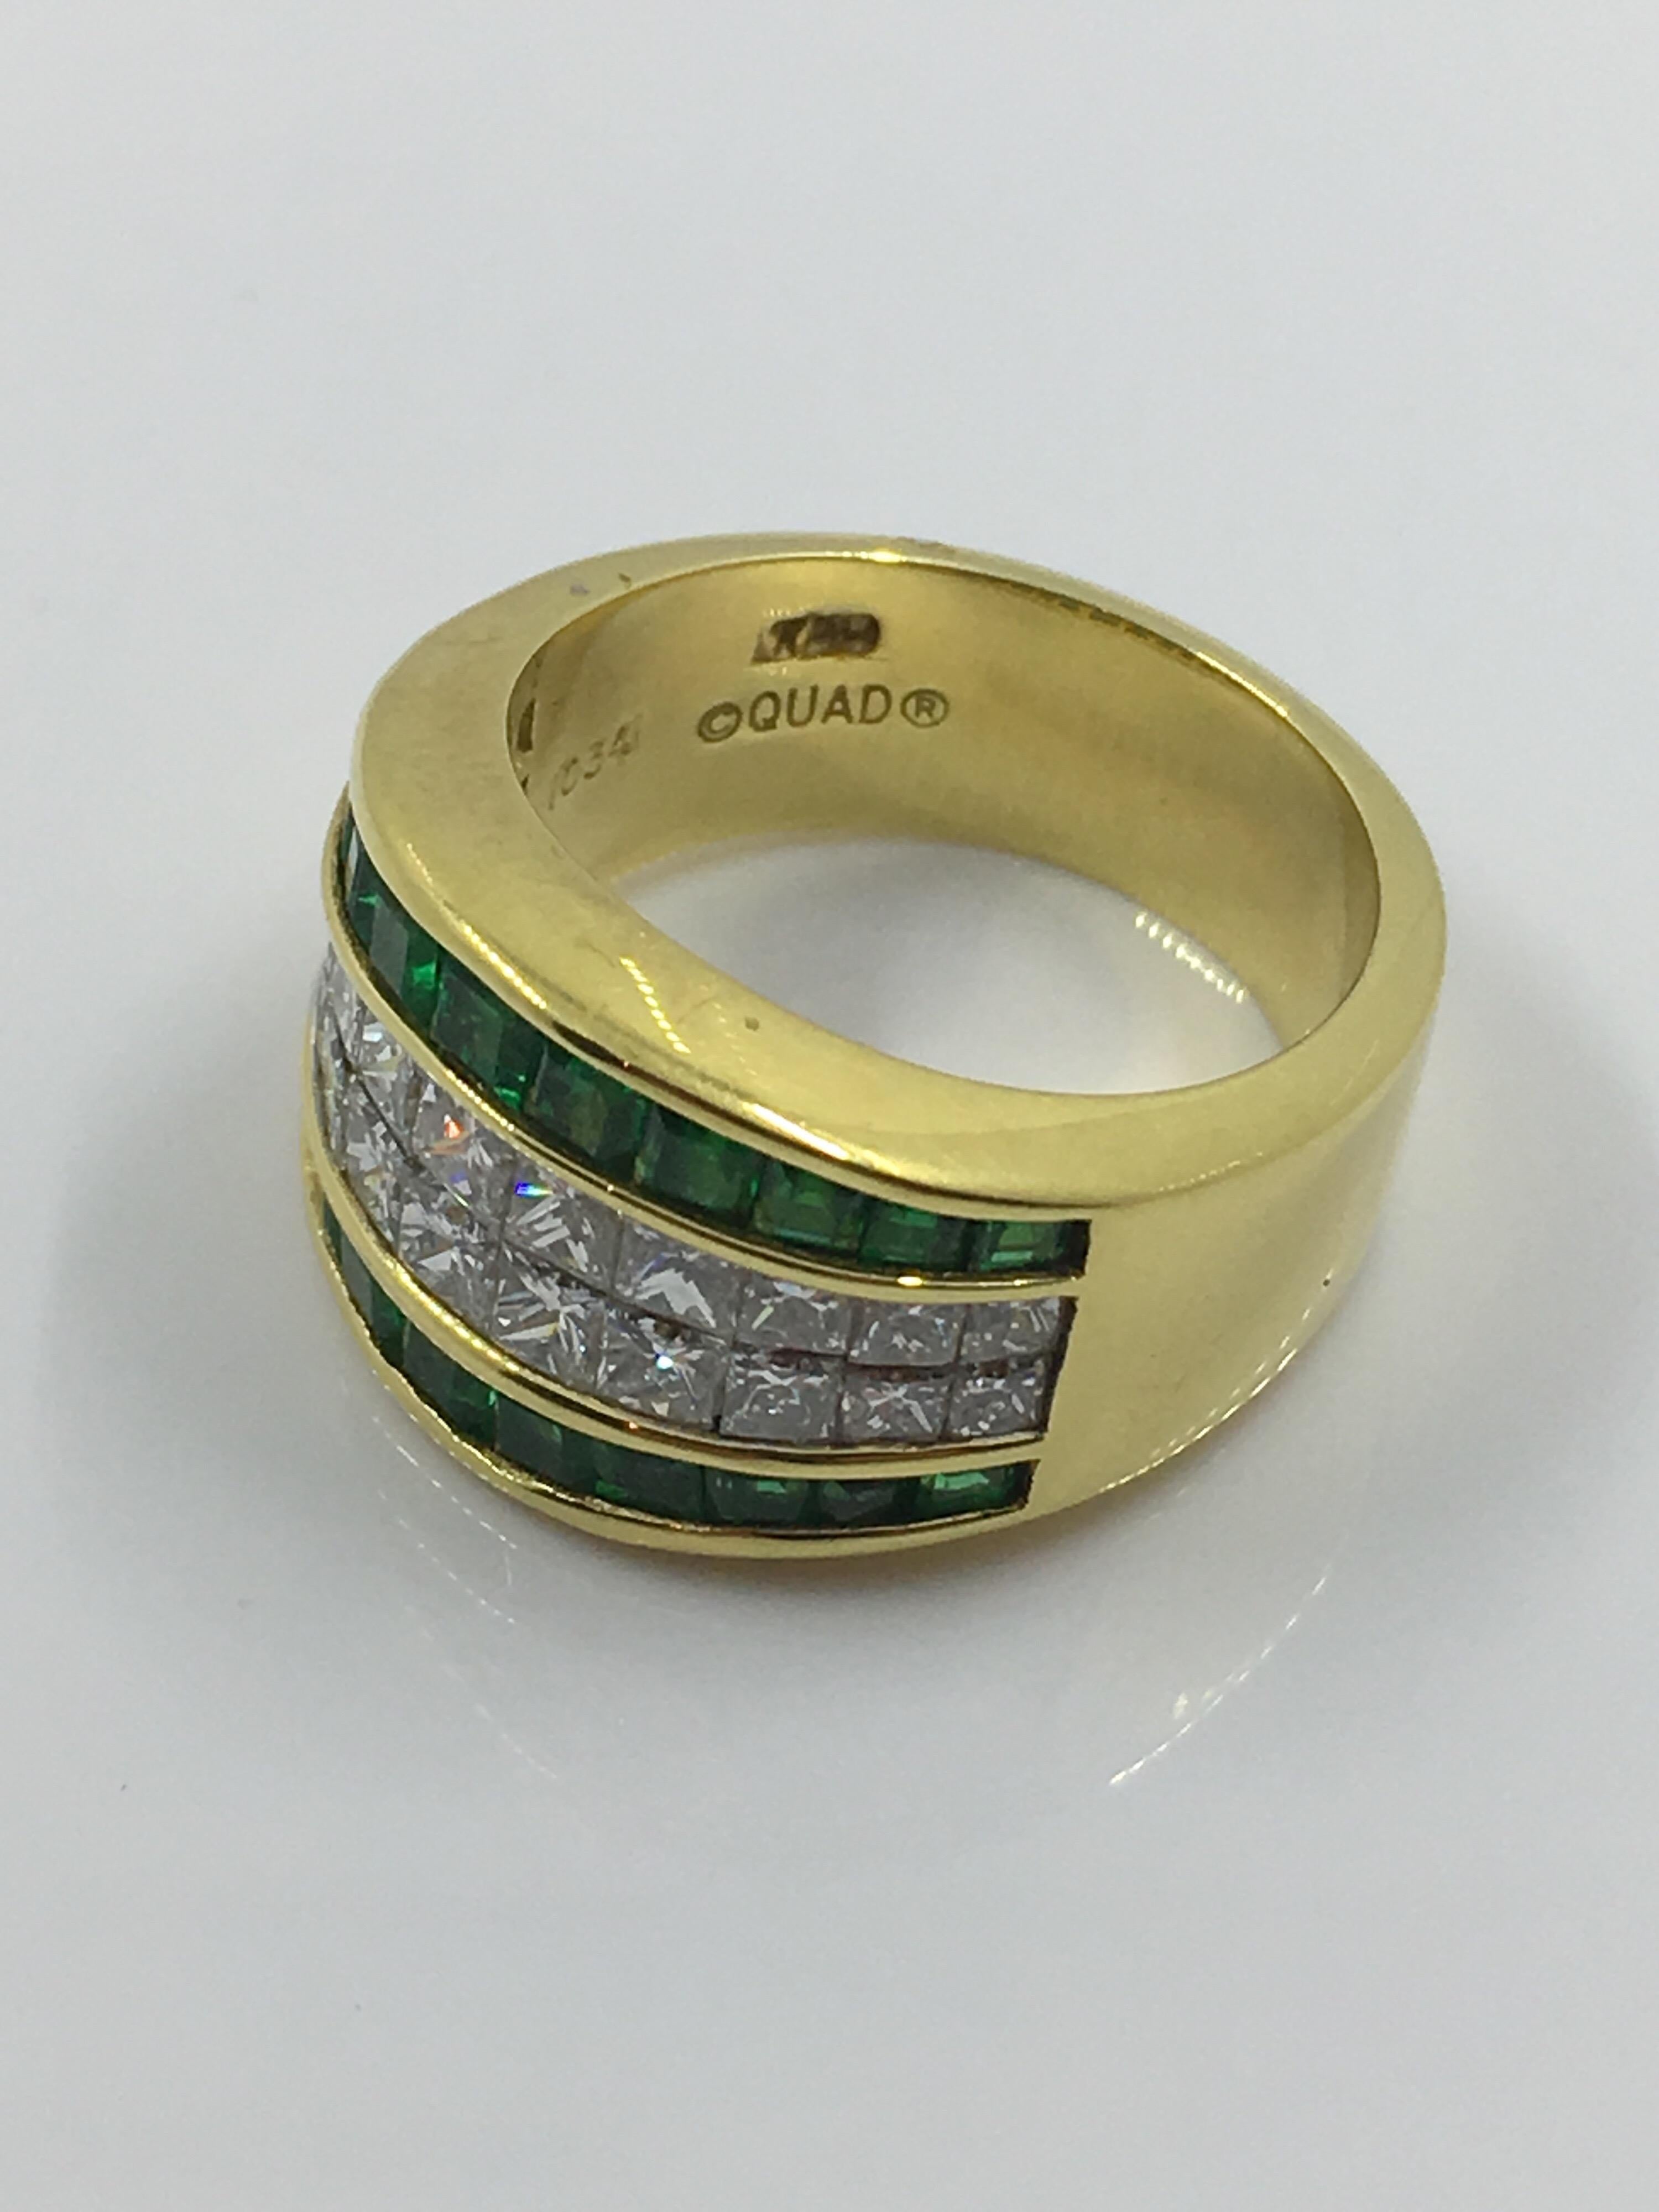 Diamonds 1.61 ct
Emeralds 1.26 ct
18kt yellow gold